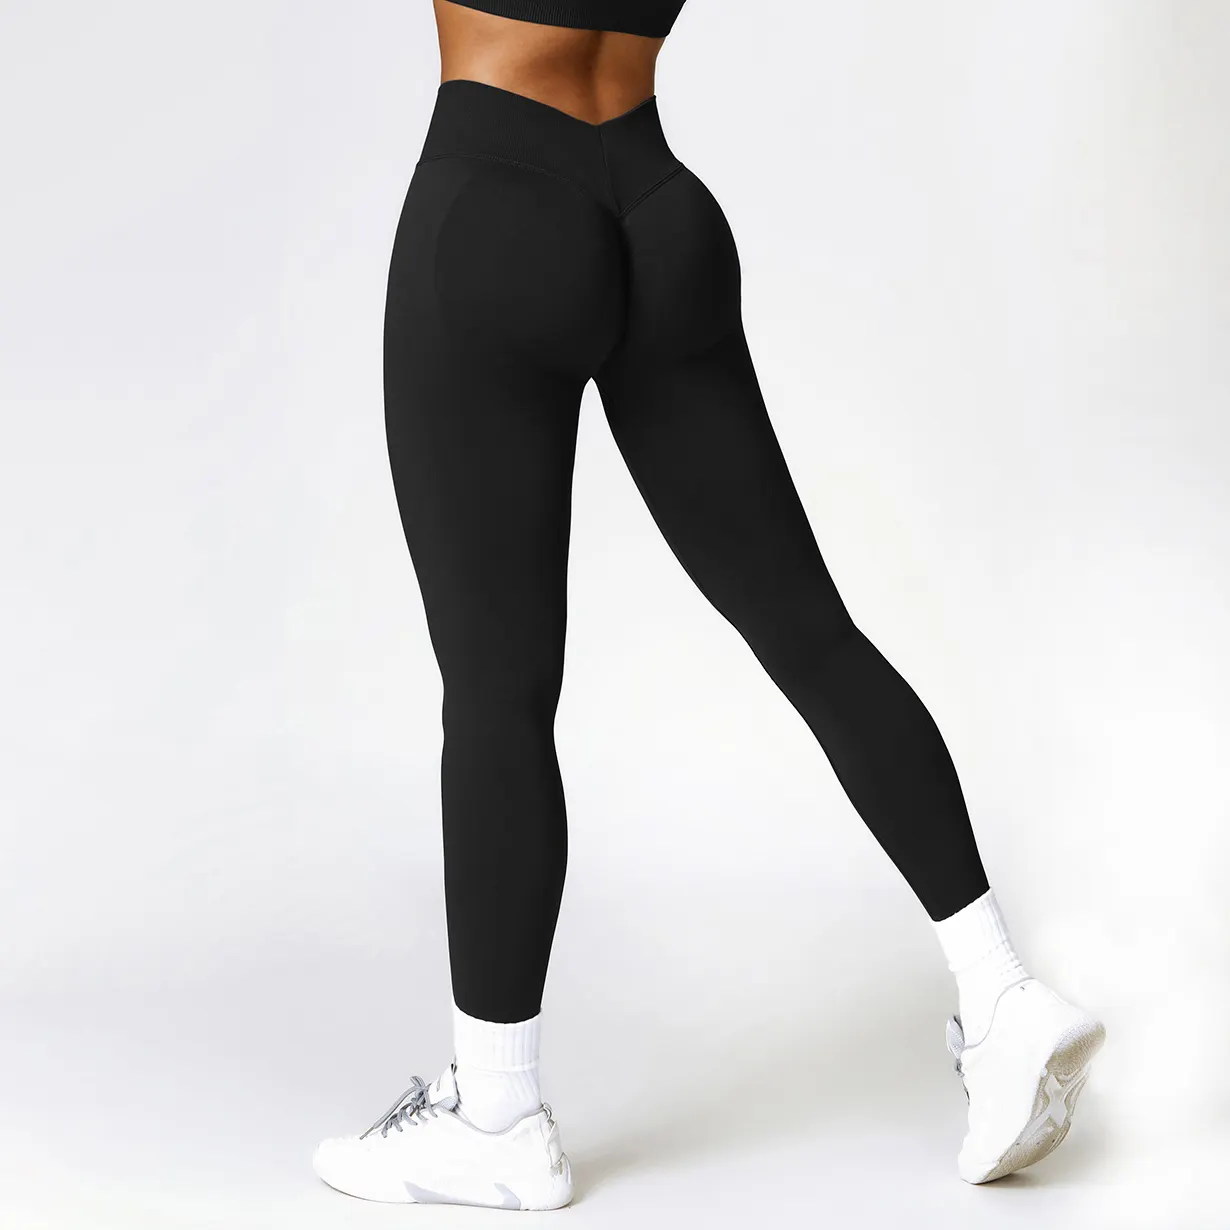 महिलाओं के लिए उच्च गुणवत्ता वाले सीमलेस नितंब योग पैंट व्यायाम रनिंग फिटनेस लेगिंग्स उच्च कमर नग्न सेंस योग पैंट